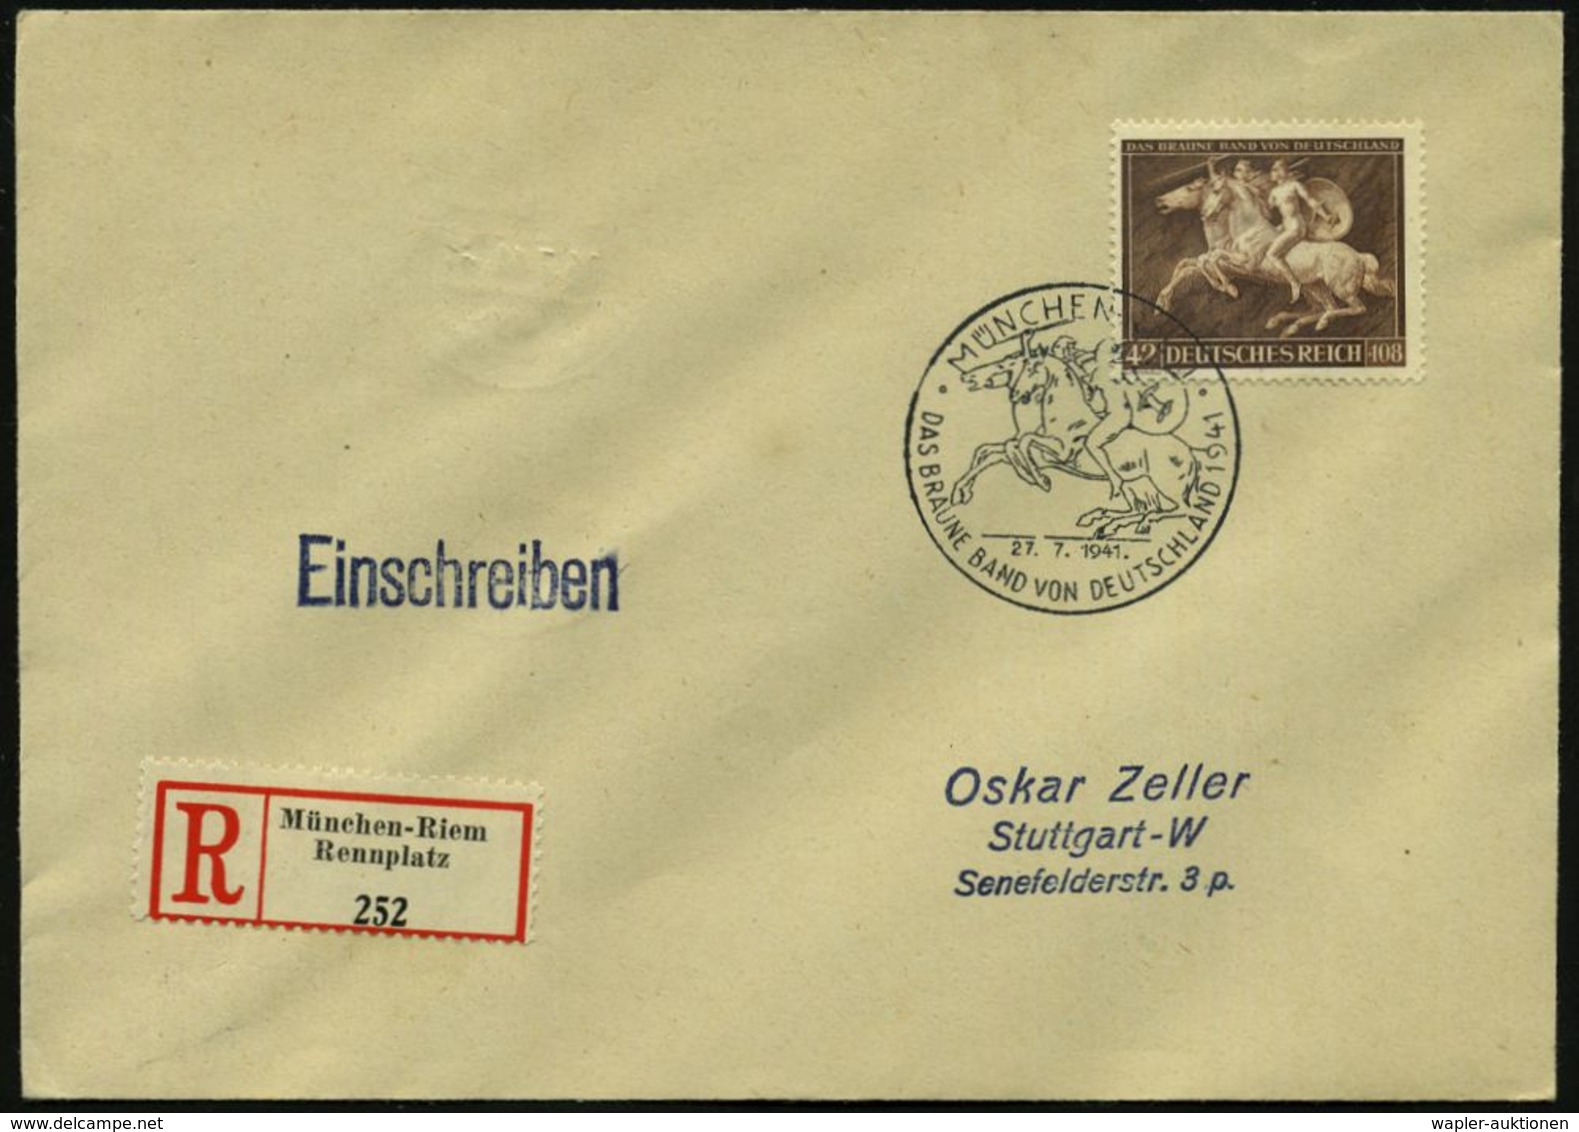 ANTIKES GRIECHENLAND : MÜNCHEN-RIEM/ DAS BRAUNE BAND VON DEUTSCHLAND 1941 (27.7.) SSt = 2 Amazonen Zu Pferd Auf Motivgl. - Archaeology